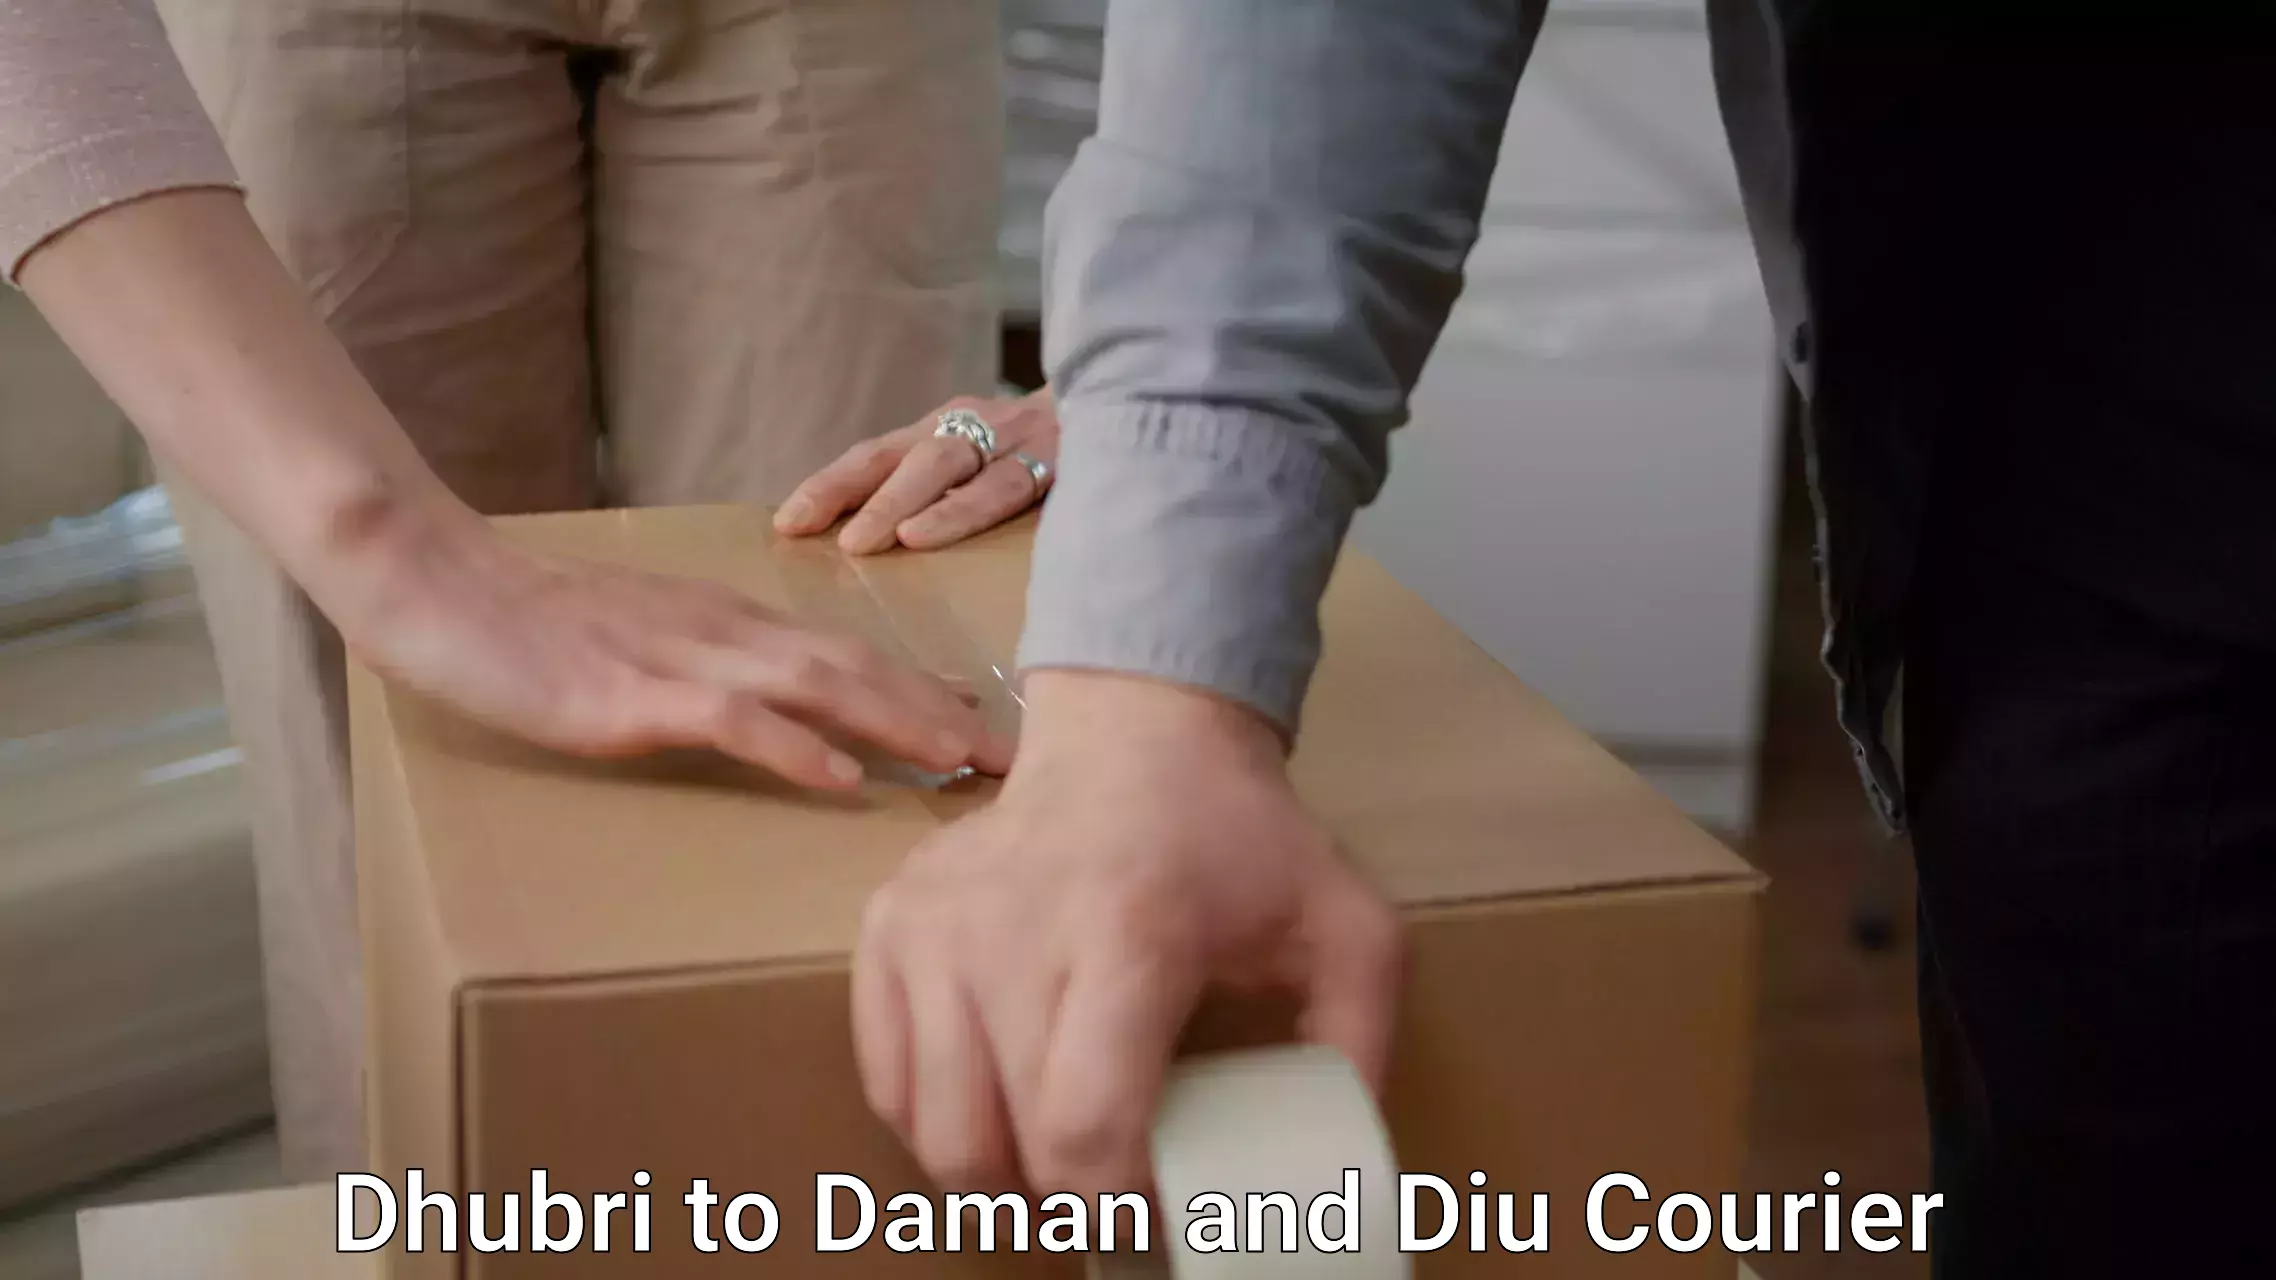 Furniture moving experts Dhubri to Daman